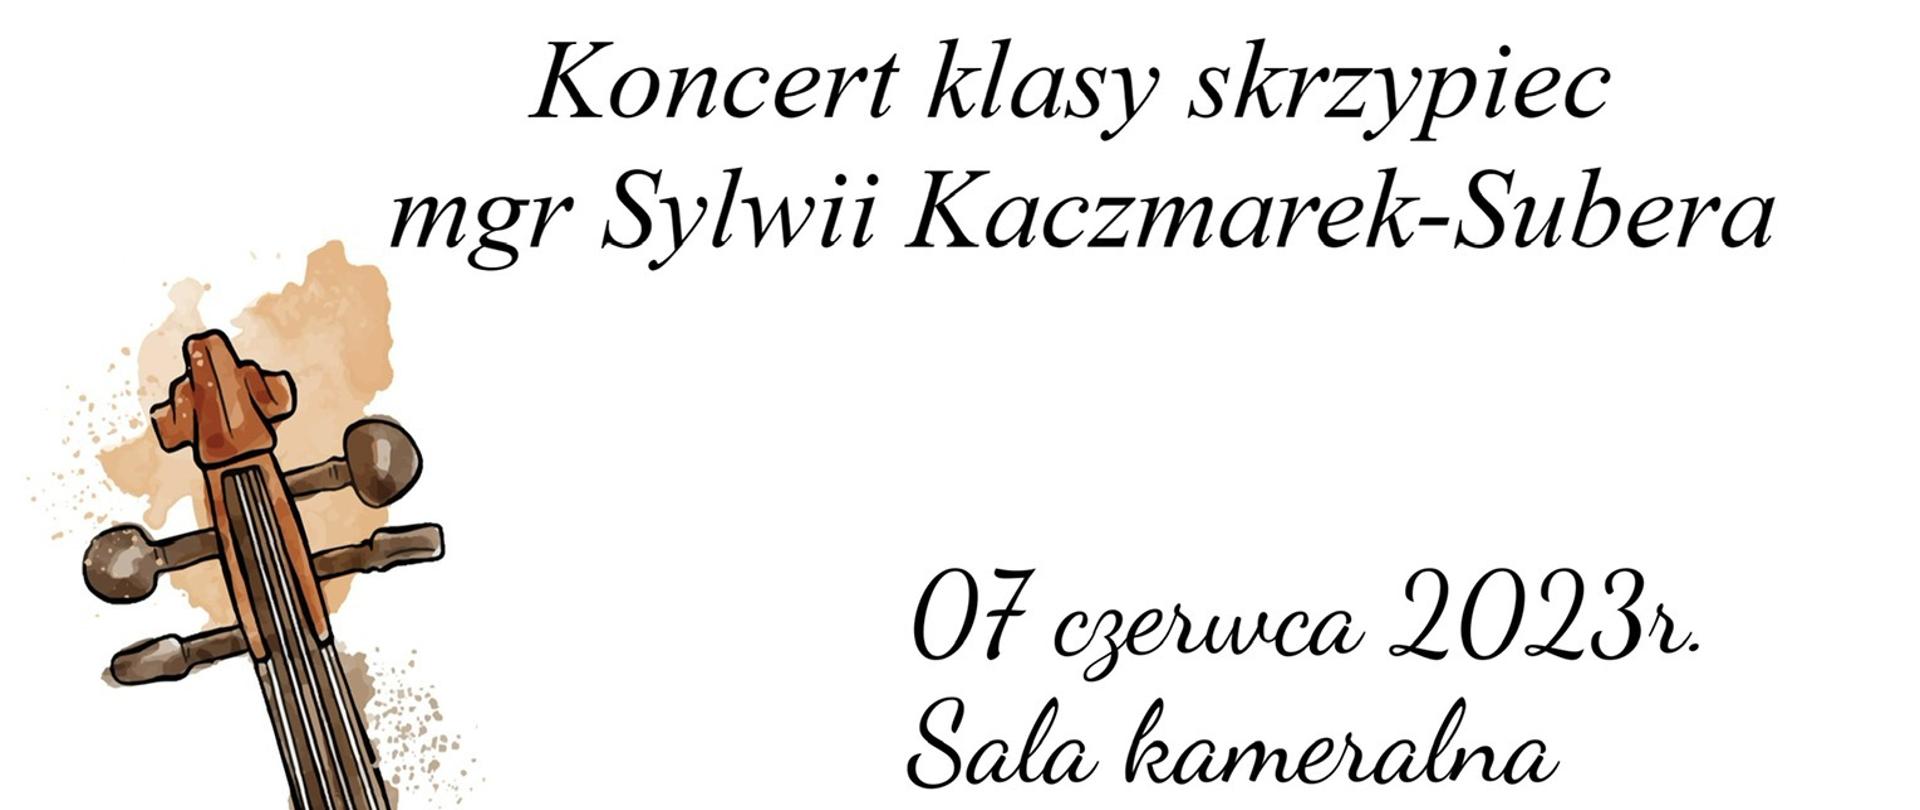 Plakat na białym tle rysunek skrzypiec oaz informacja dotycząca koncertu klasy Pani Sylwii Kaczmarek-Subera, który zaplanowany jest w dniu 07.06.2023 o godzinie 16:00.